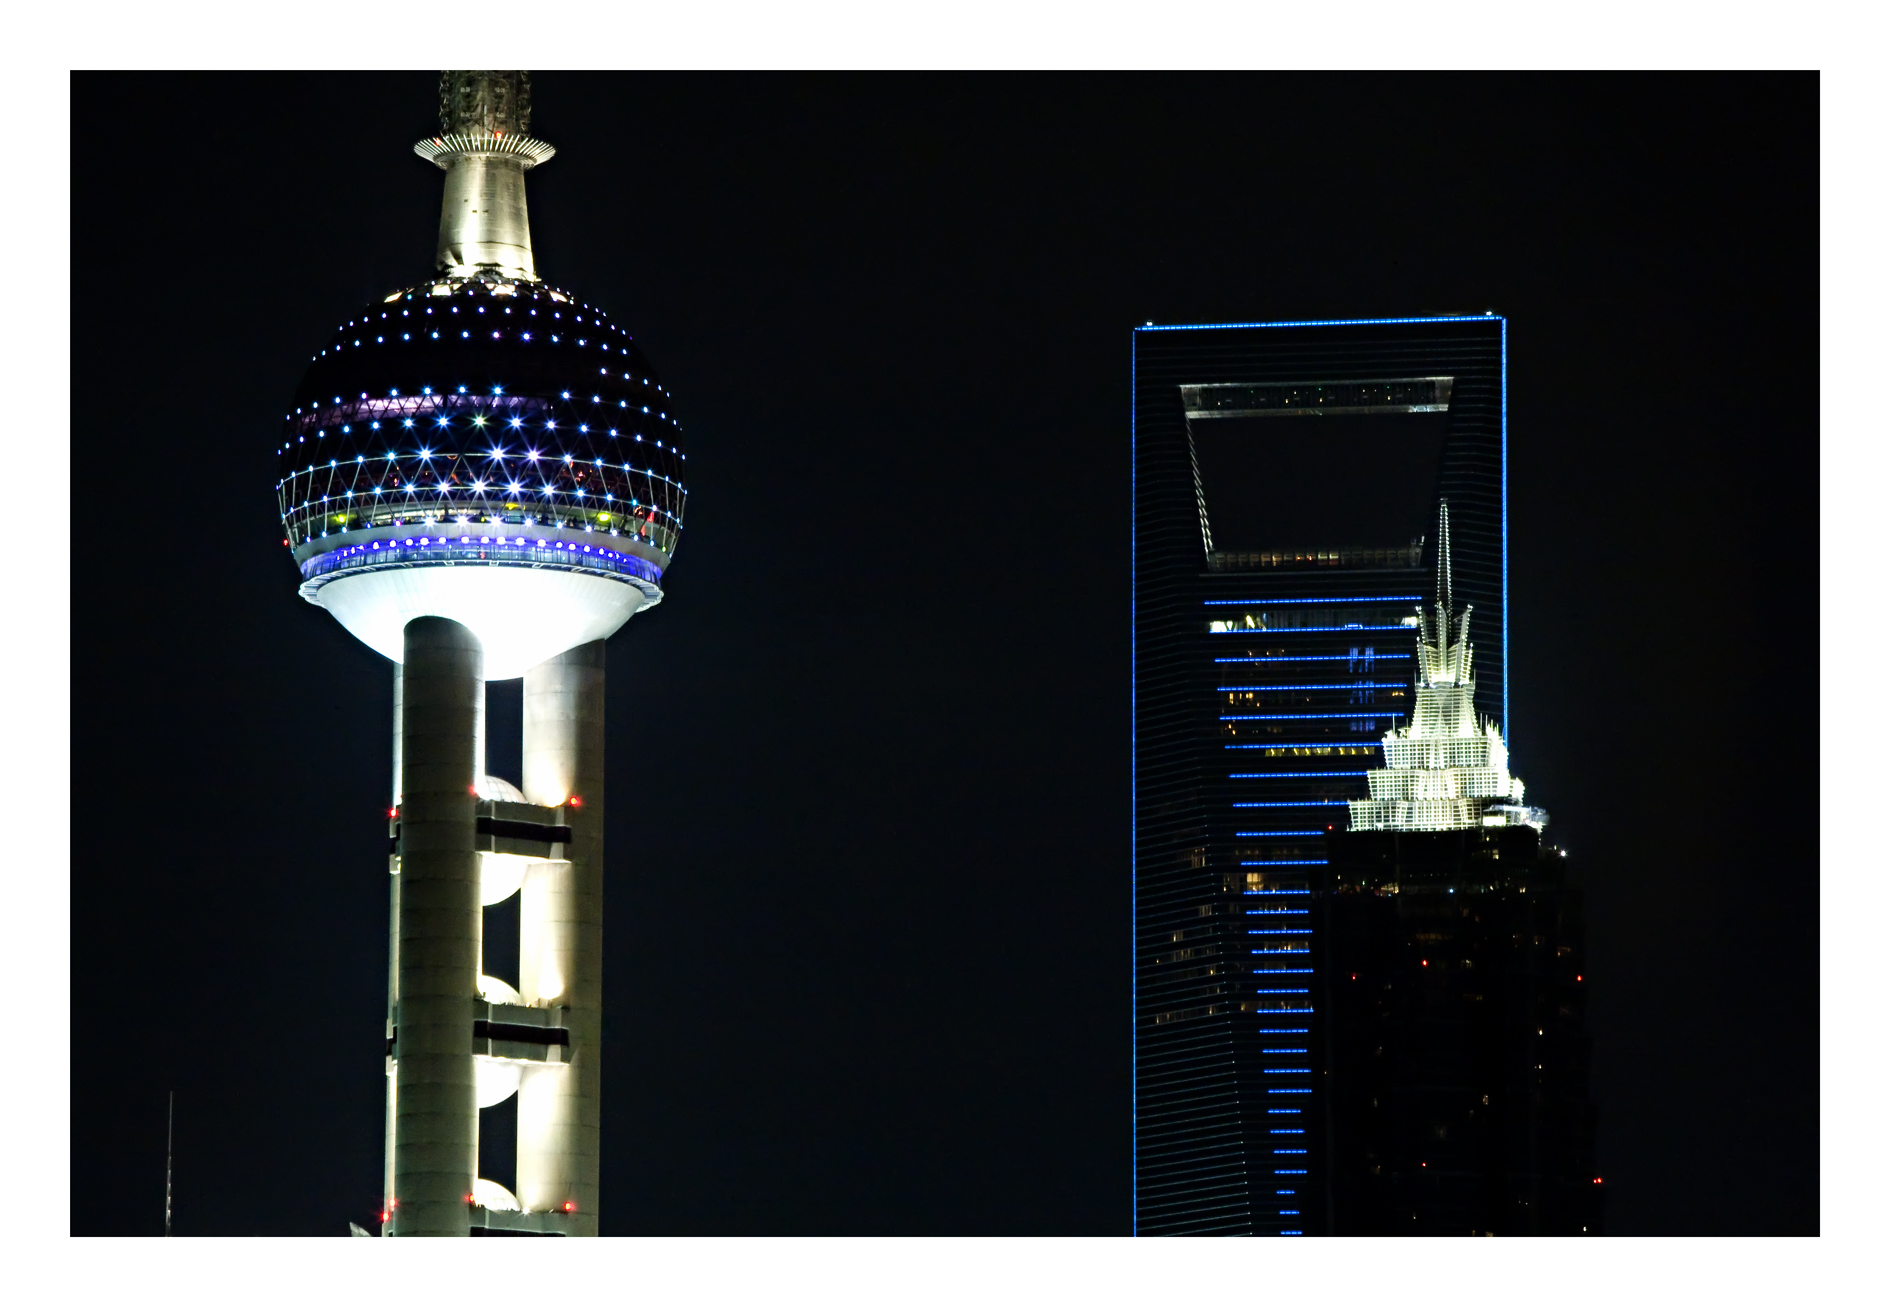 foto per il corso di fotografia urbana notturna con cavalletto, che ritrae lo skyline del quartiere finanziario e della borsa di Shanghai, il Pudong New Area